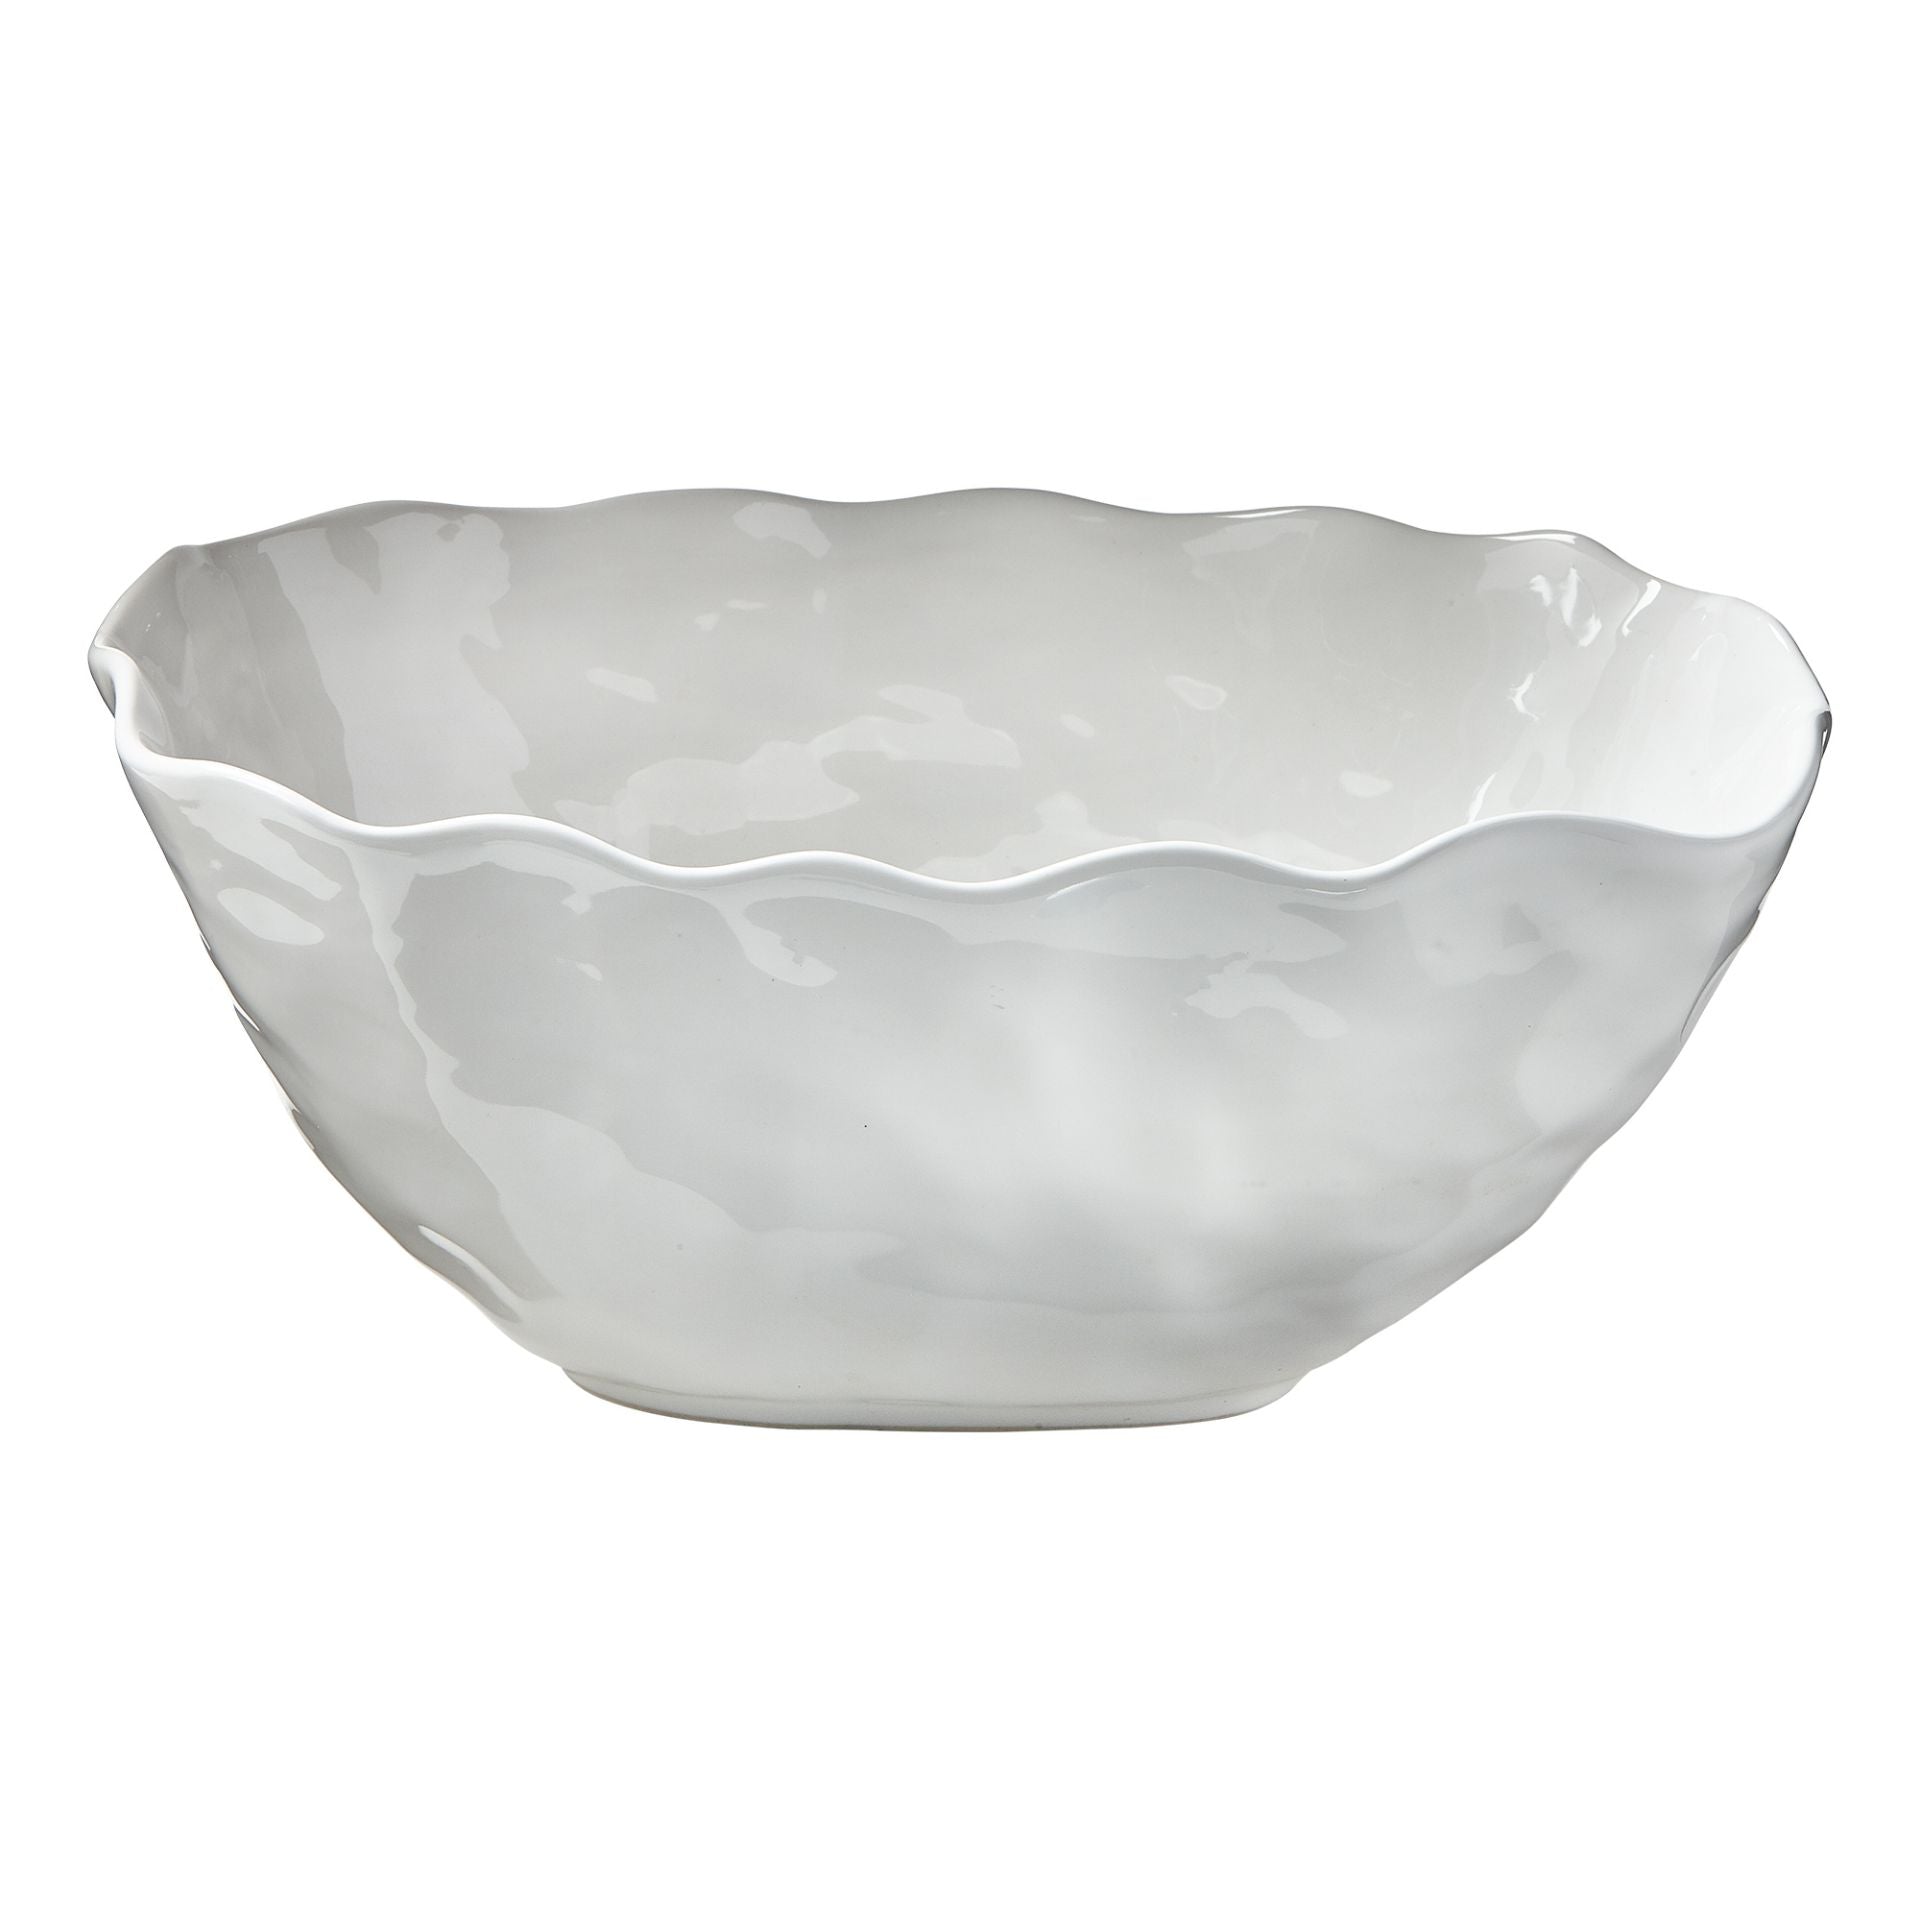 Formosa oval entertain bowl - white